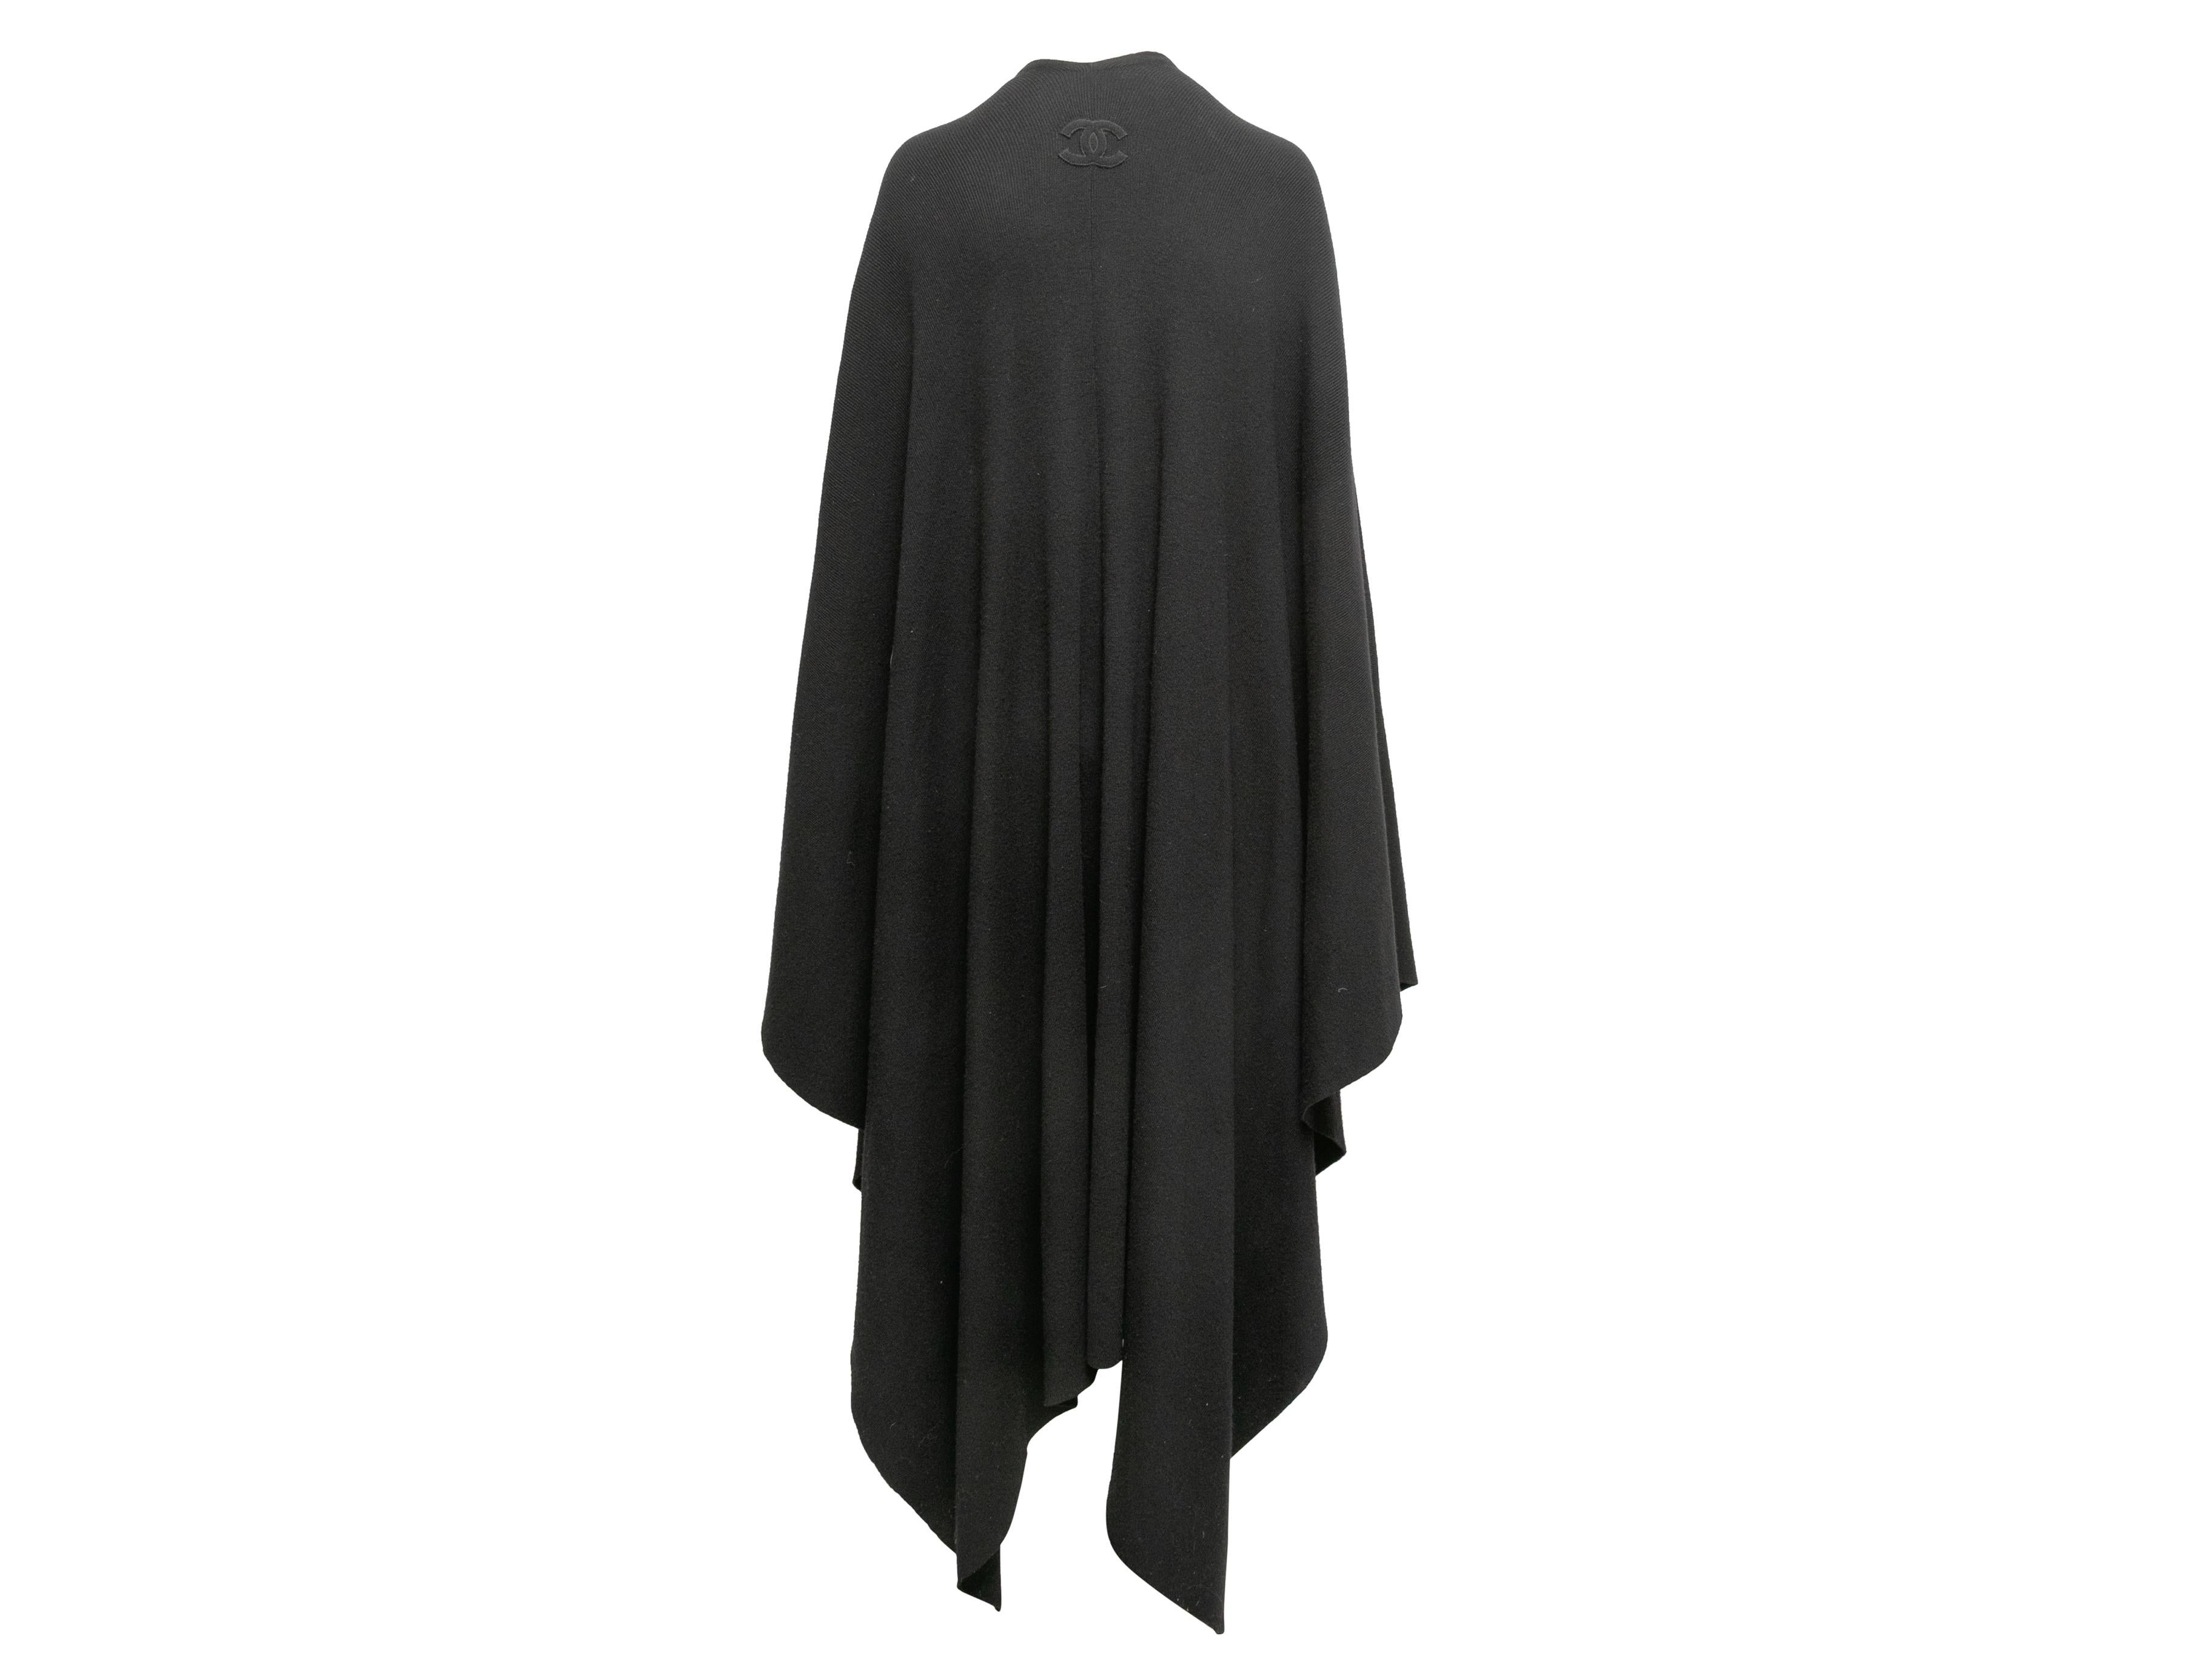 Black long wool shawl cape by Chanel. Asymmetrical hem. 66